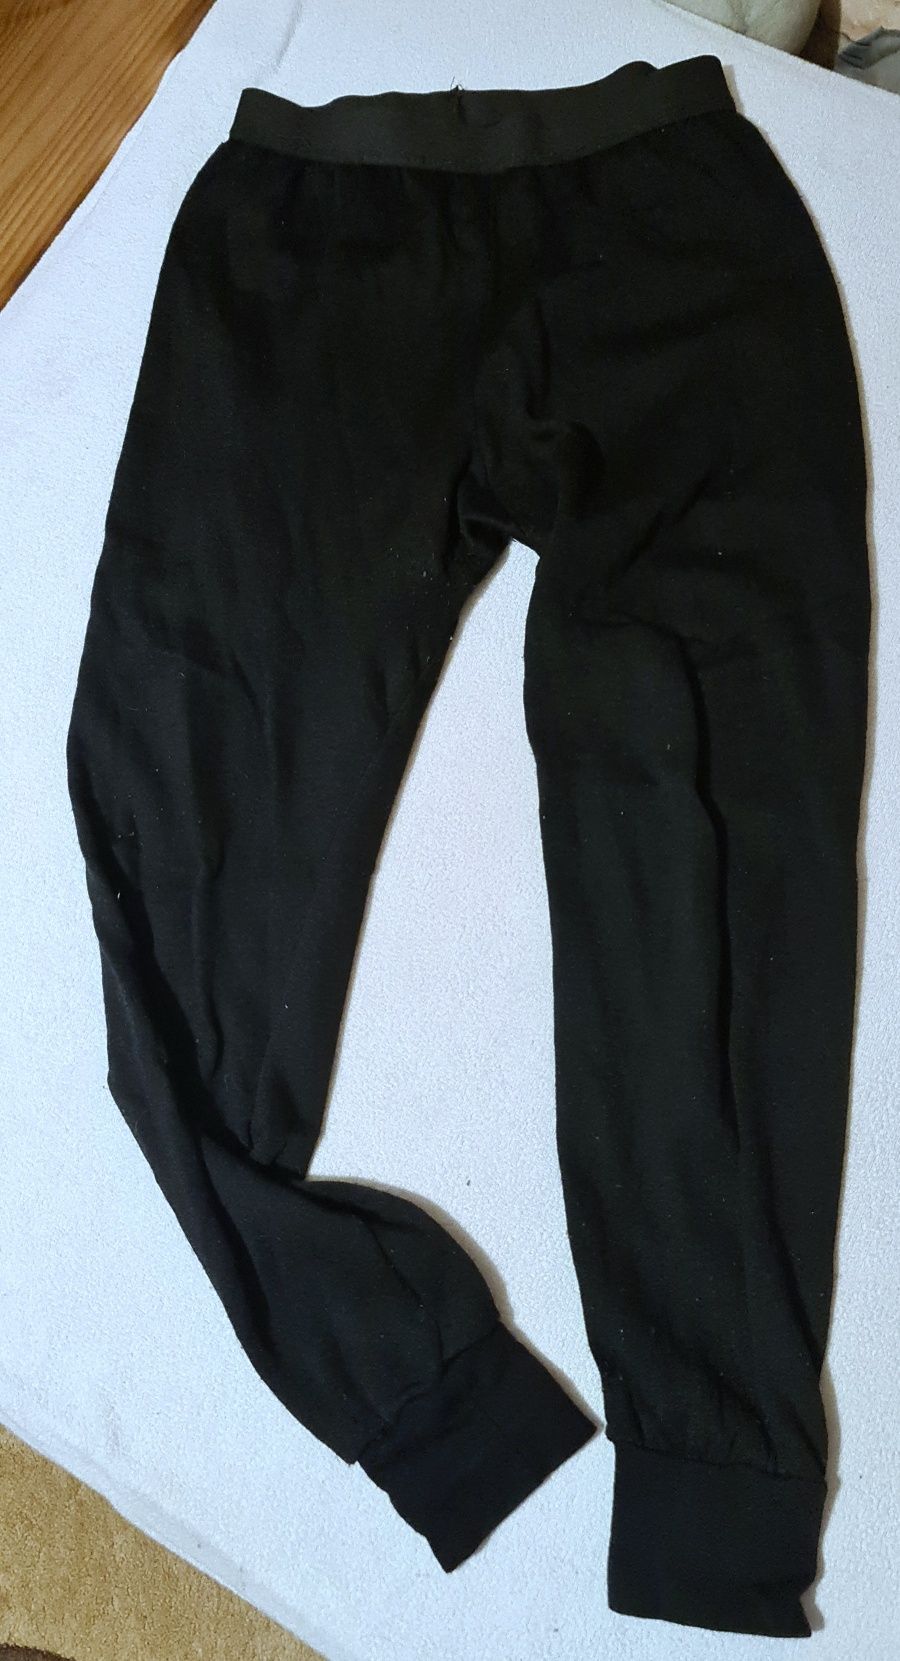 Damska termiczna odzież legginsy Ullfrotte rozm L. 65% Merinoull